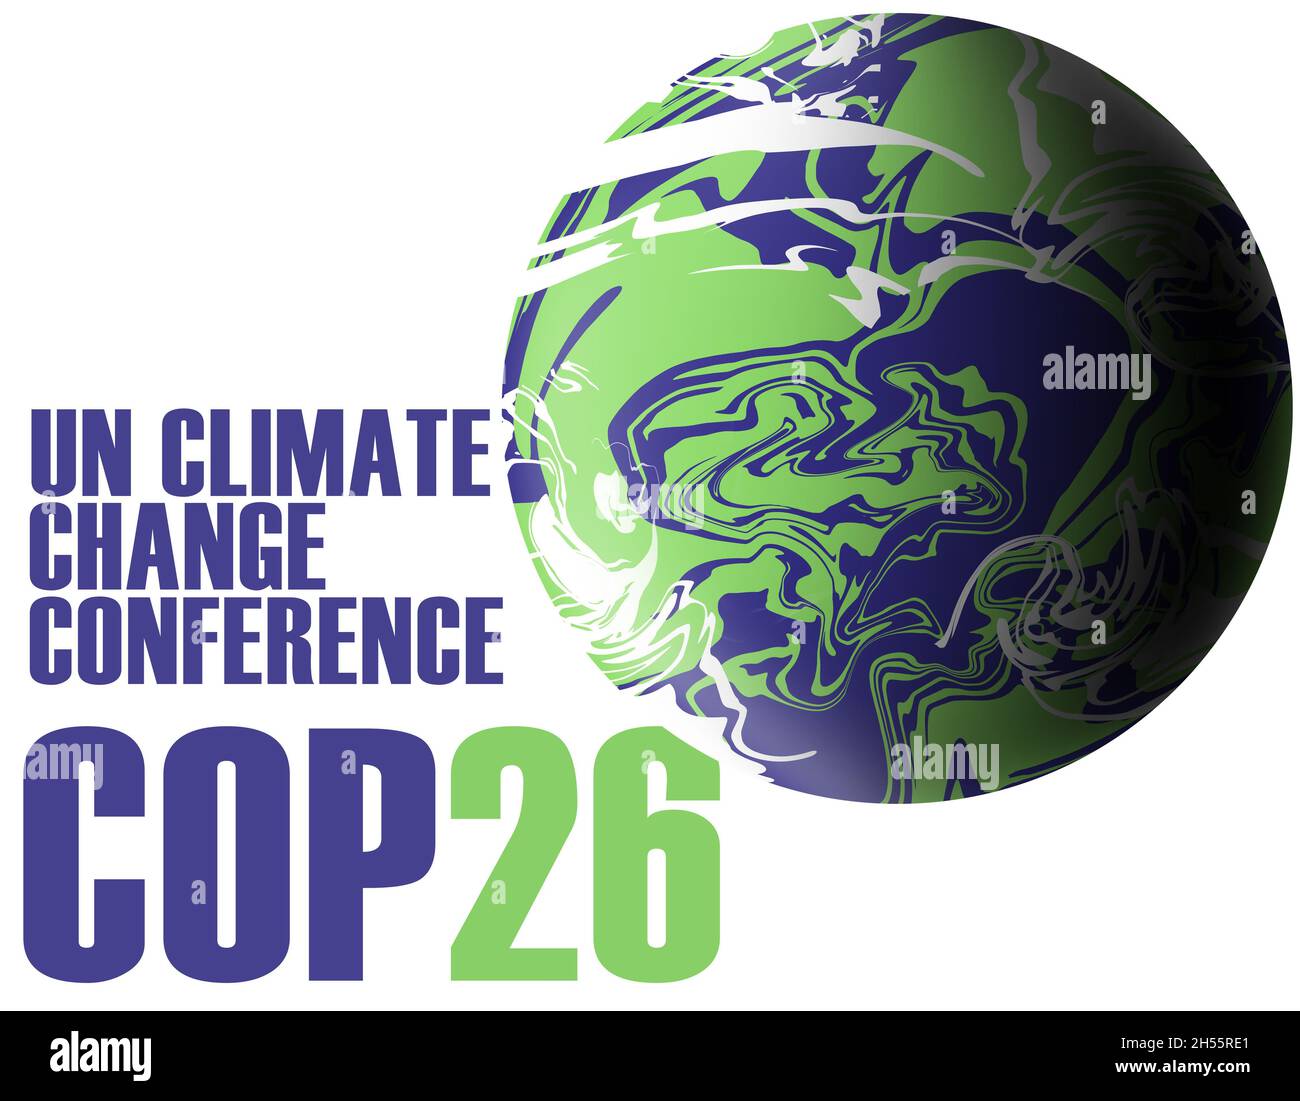 cop26 glasgow, un climate change conference Stock Photo